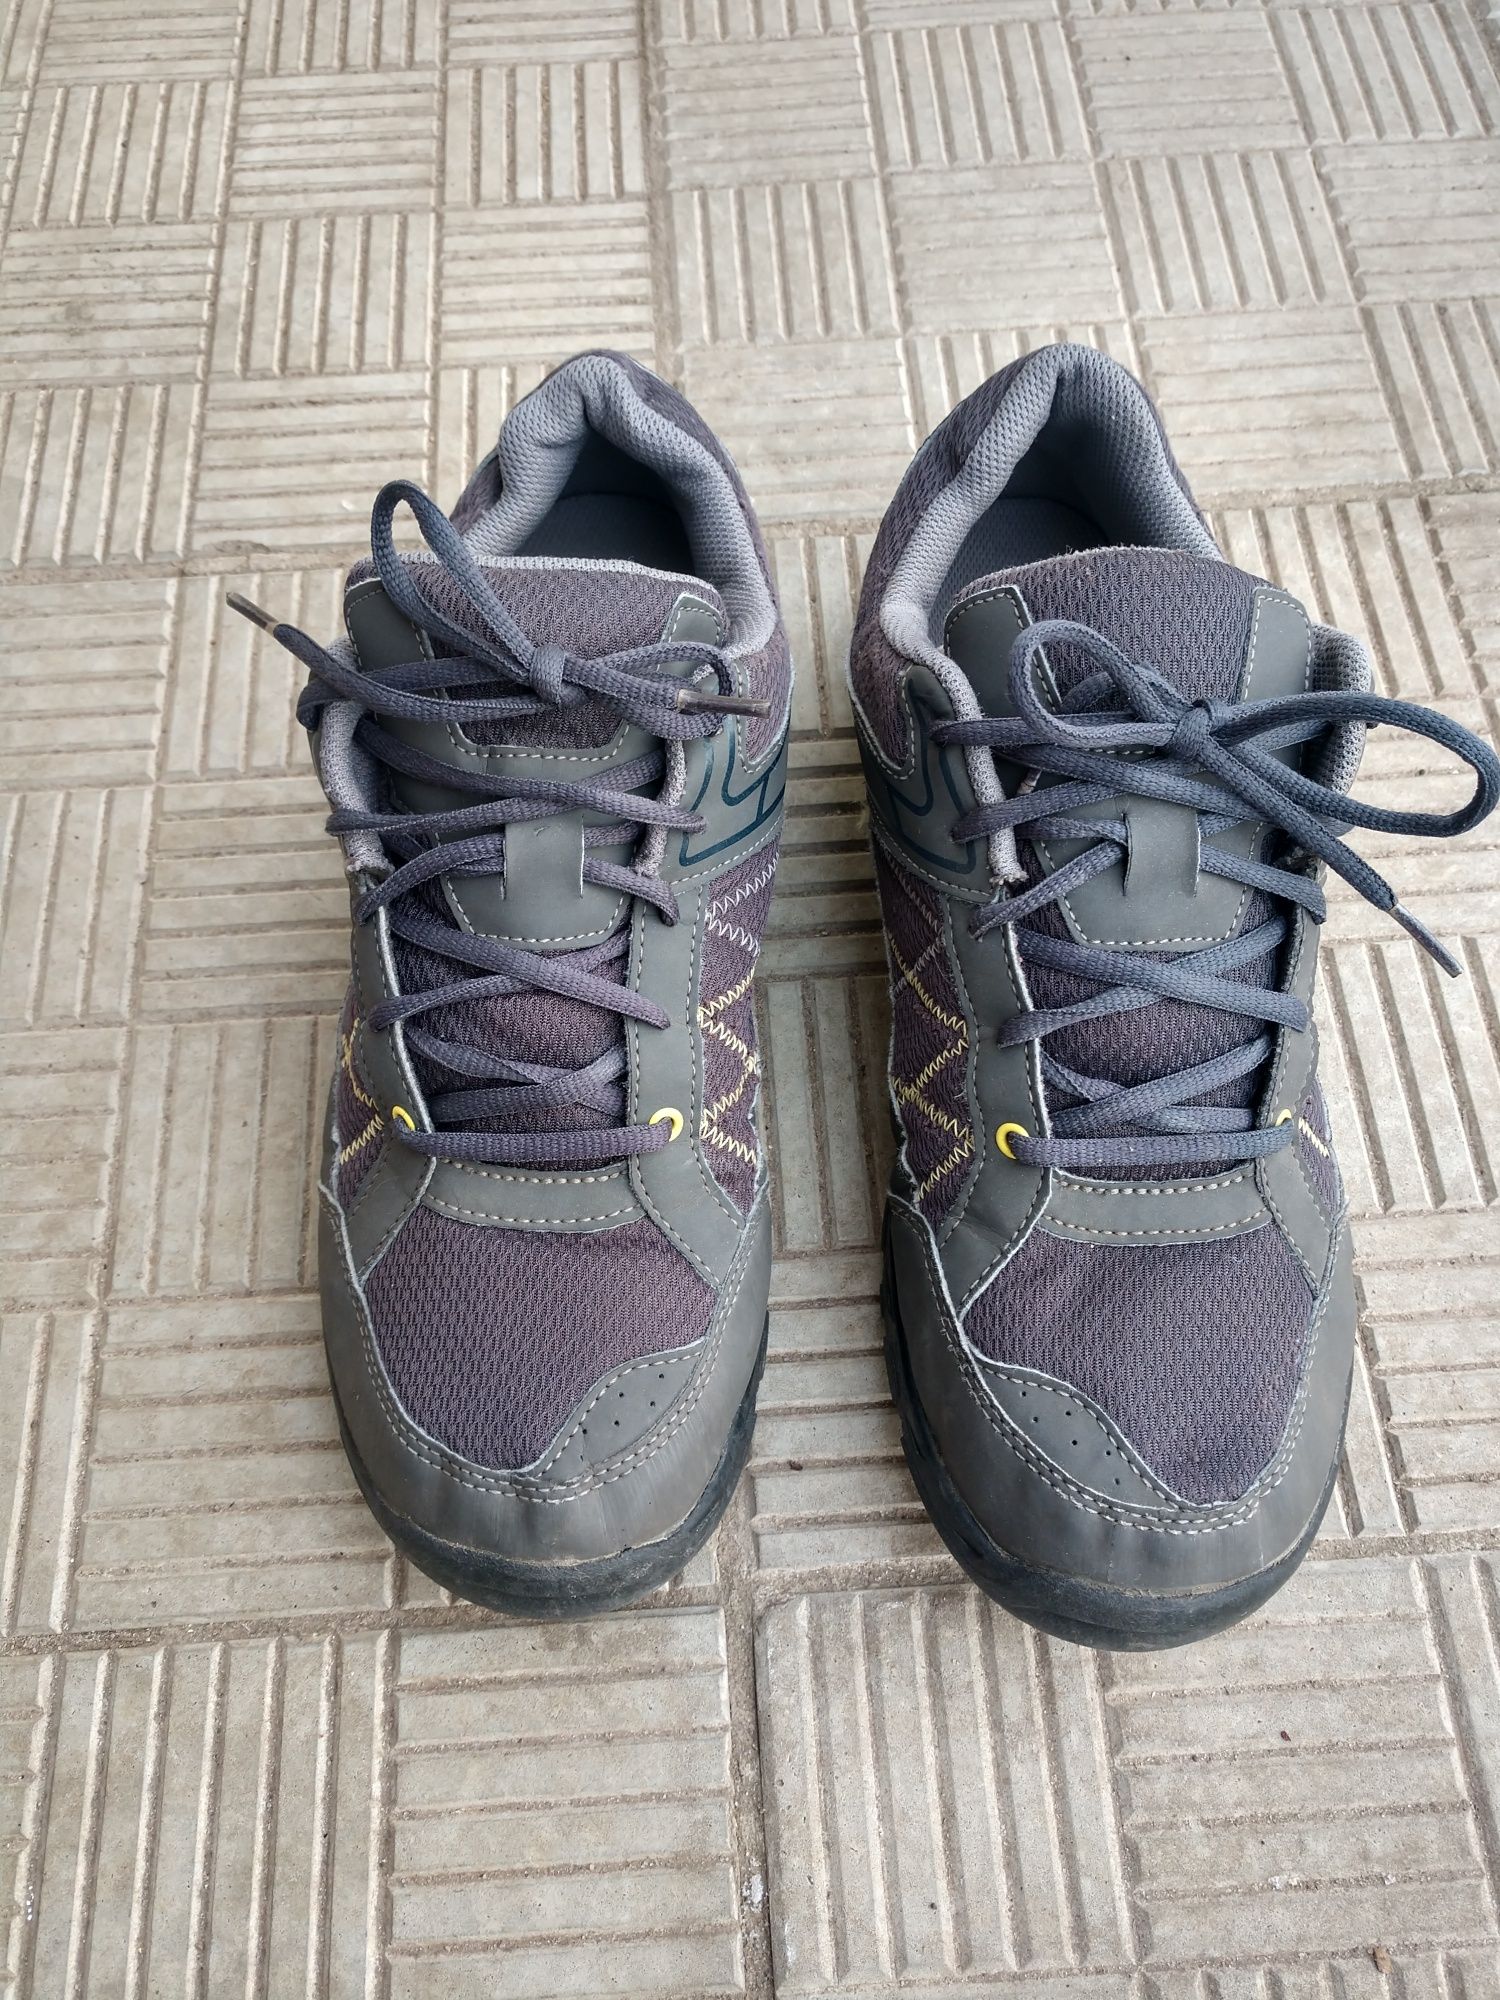 Трекінгові кросівки Quechua, Decathlon, р 44.